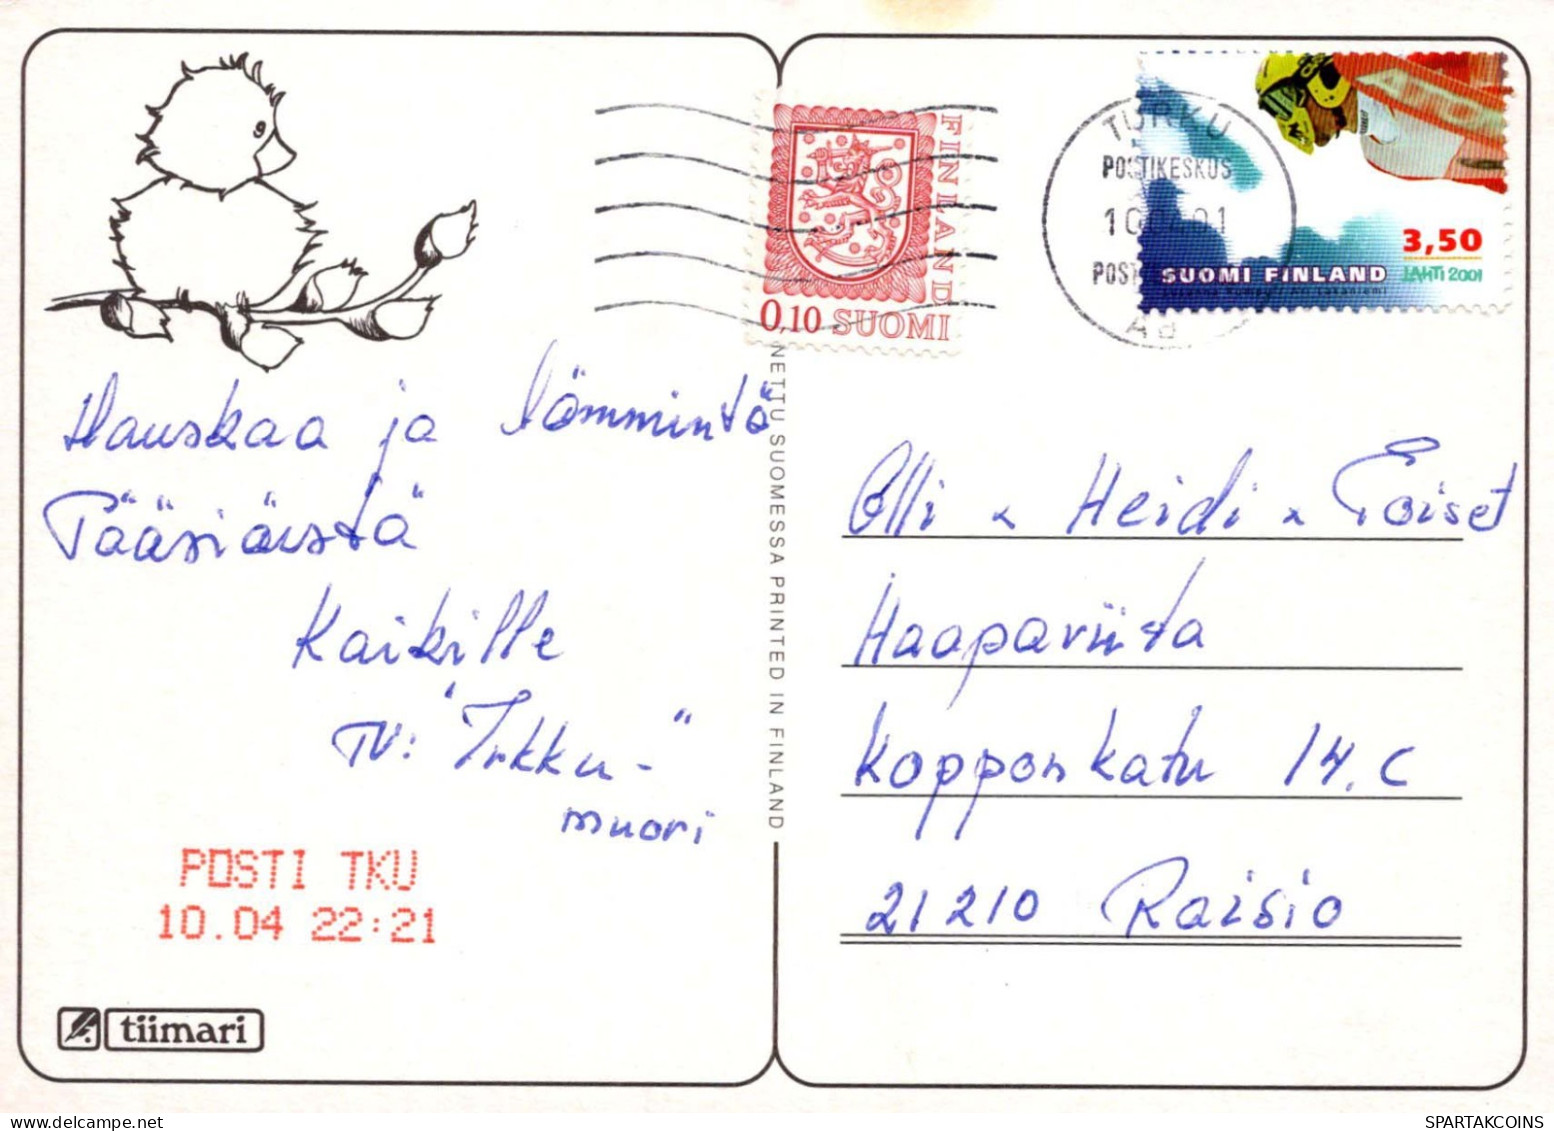 OSTERN HUHN Vintage Ansichtskarte Postkarte CPSM #PBO983.DE - Easter